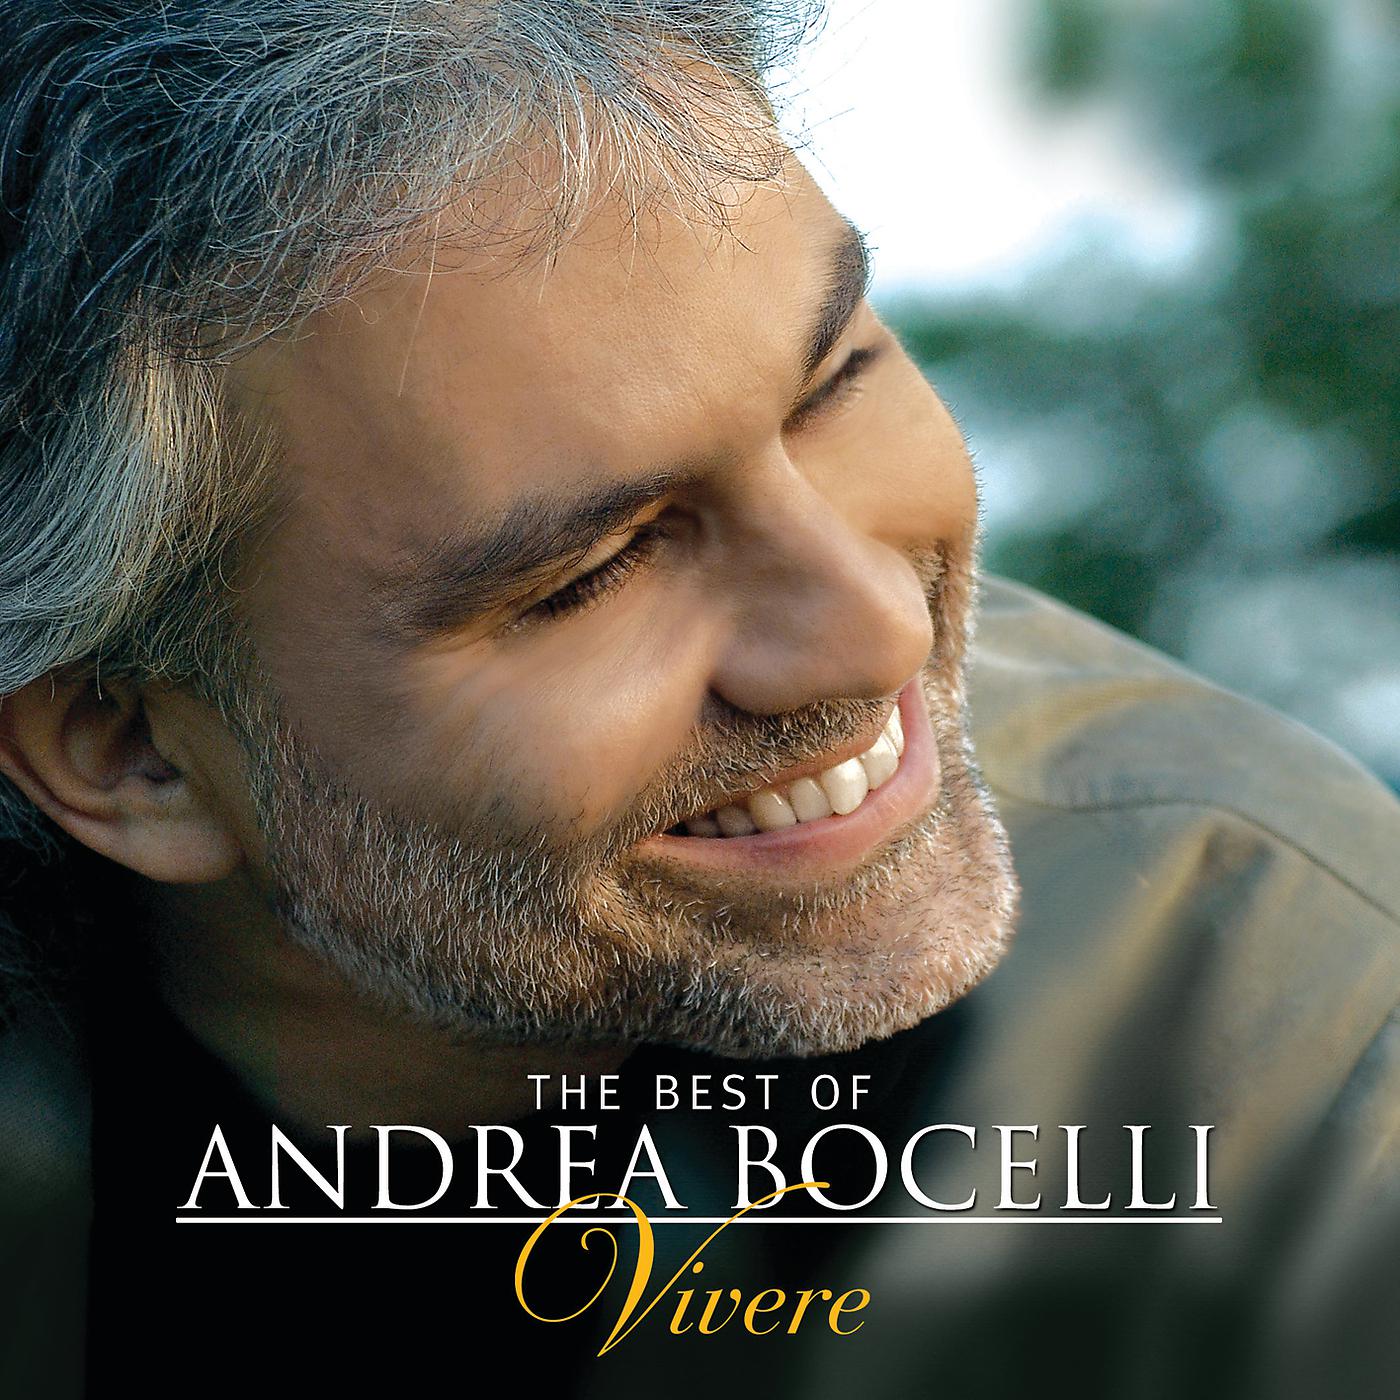 Andrea bocelli vivo. Андреа Бочелли. Andrea Bocelli 1992. Андреа Бочелли Бесаме. Андреа Бочелли vivere.